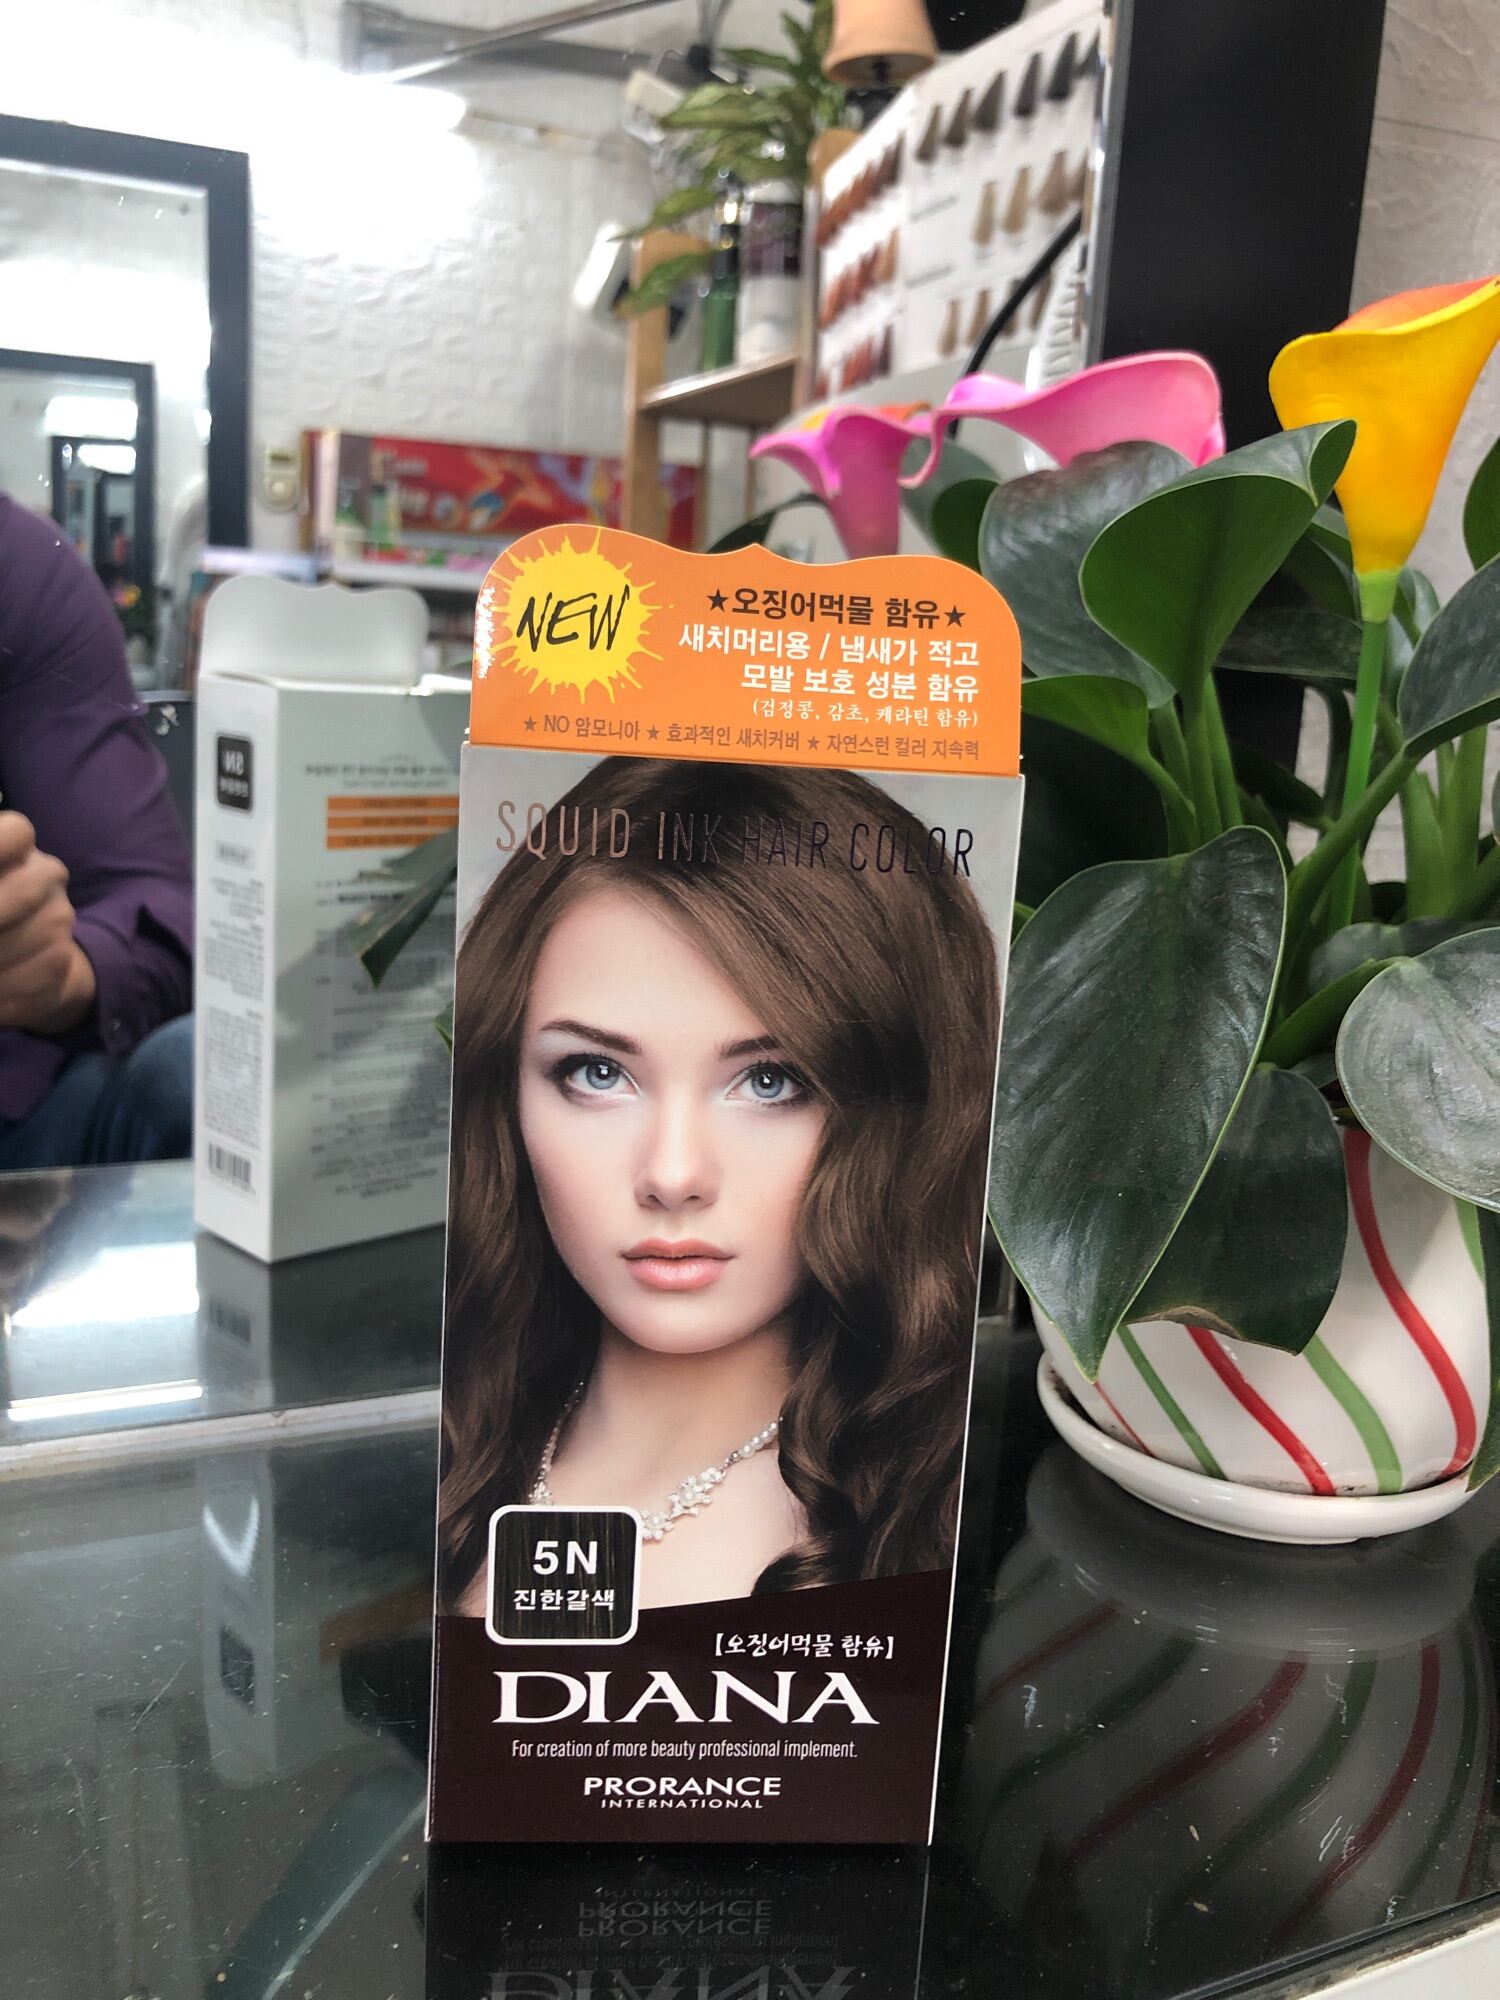 Bảng màu thuốc nhuộm tóc Hàn Quốc: Khám phá bảng màu thuốc nhuộm tóc từ Hàn Quốc đầy sắc màu tuyệt đẹp để thay đổi diện mạo của bạn! Sử dụng công thức đặc biệt của Hàn Quốc, bạn sẽ không chỉ có mái tóc mới, mà còn được chăm sóc tóc một cách tuyệt vời. Hãy xem những hình ảnh ấn tượng để lựa chọn màu sắc phù hợp nhất cho bạn!